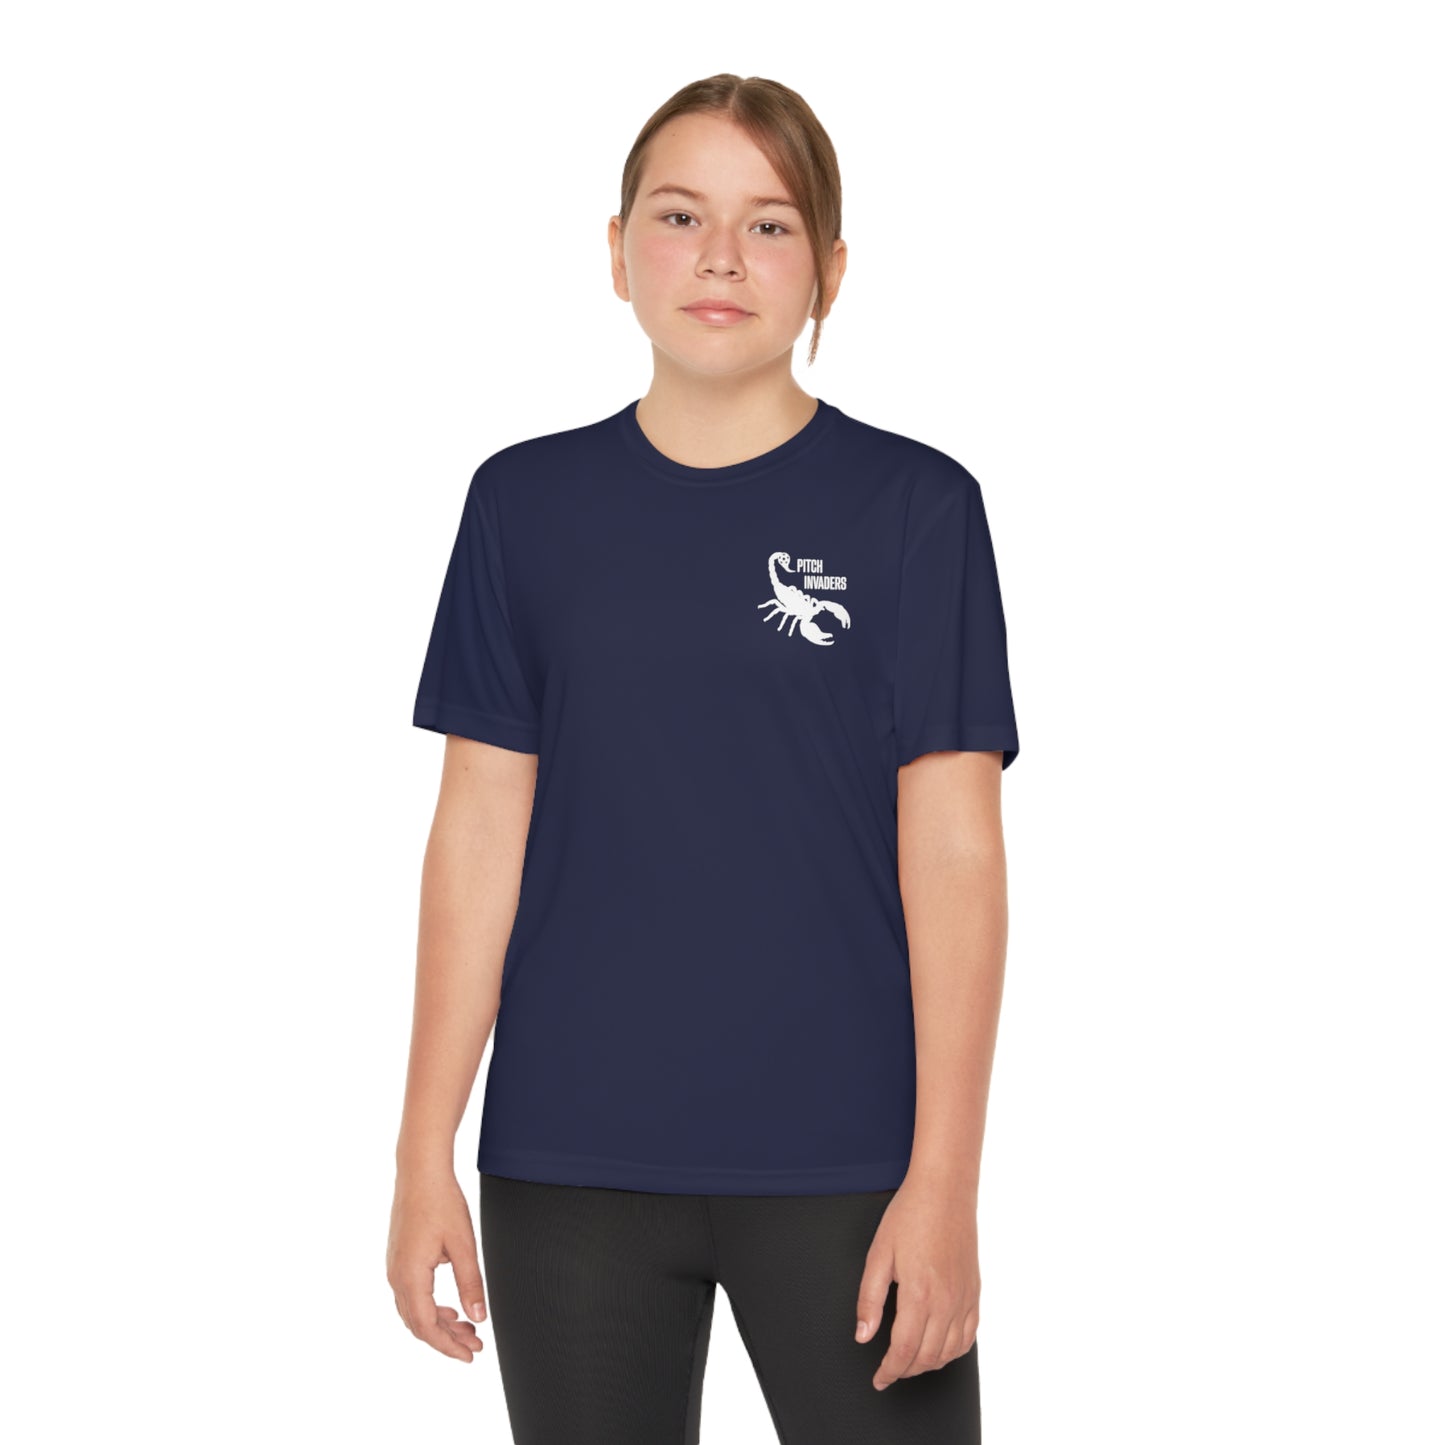 SUNDAY LEAGUE LEGEND Youth Athletic T-Shirt (Unisex)